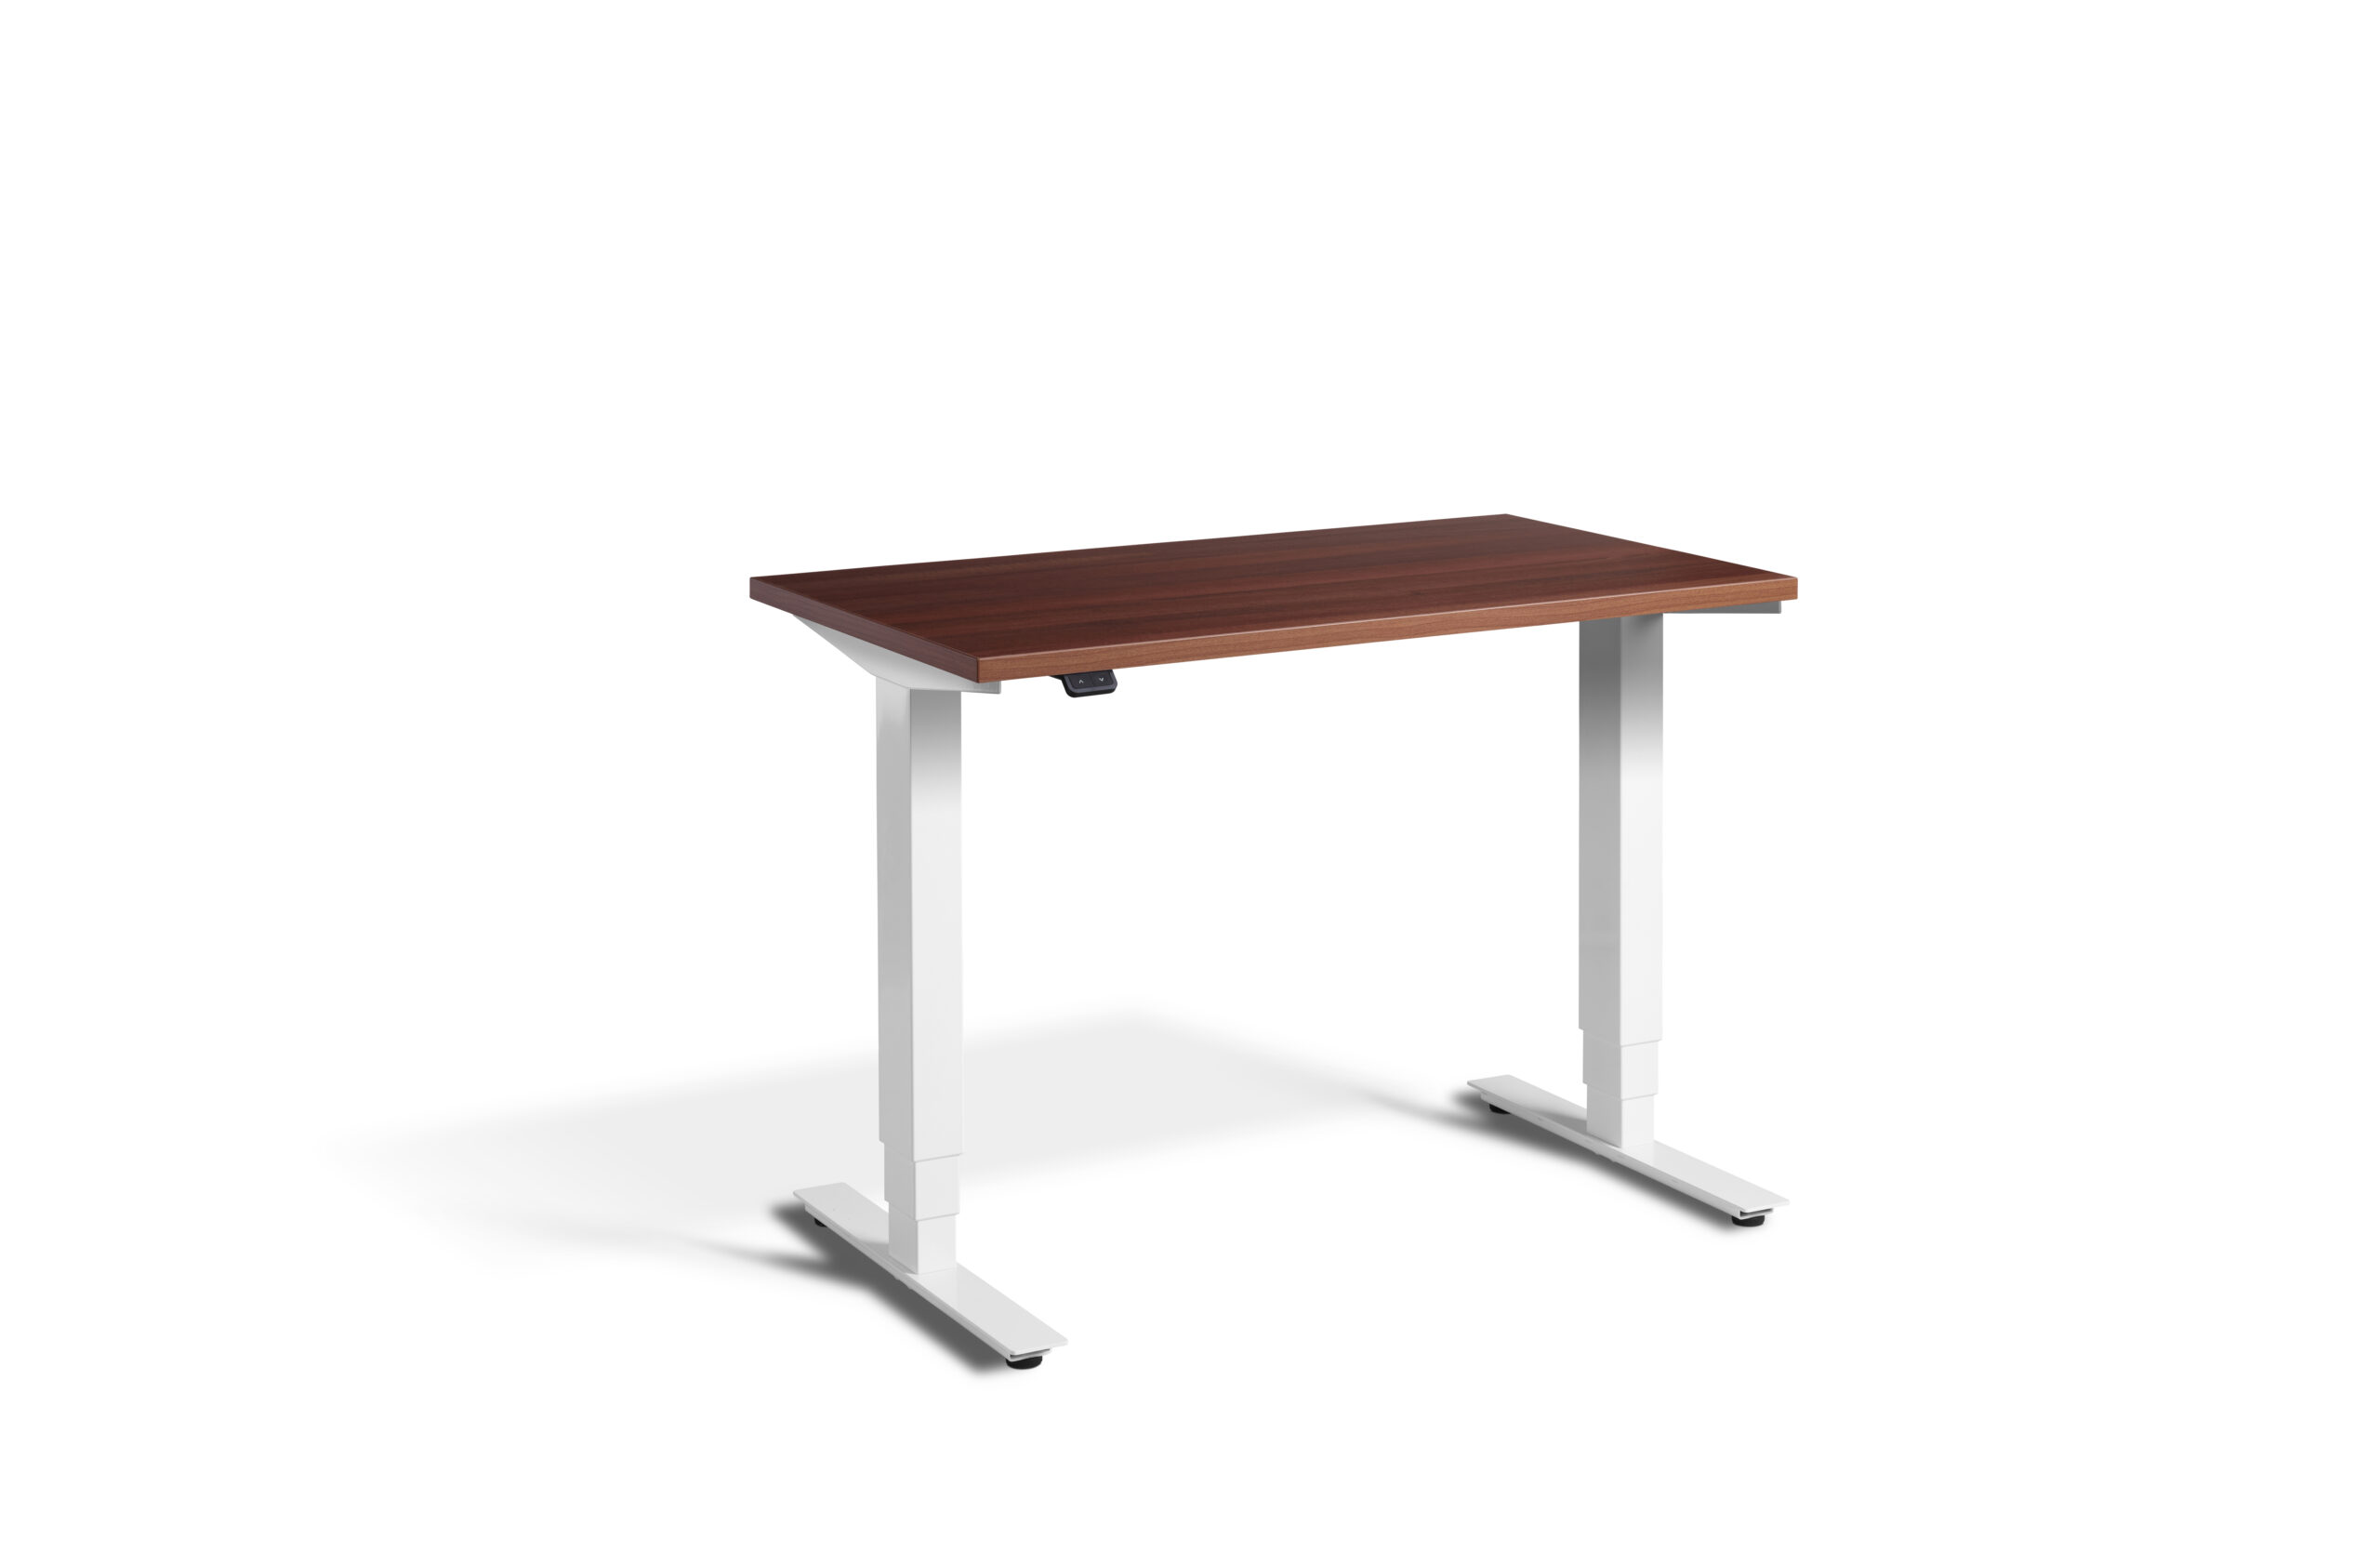 The Mini Desk - Height Adjustable Desk By Lavoro Design